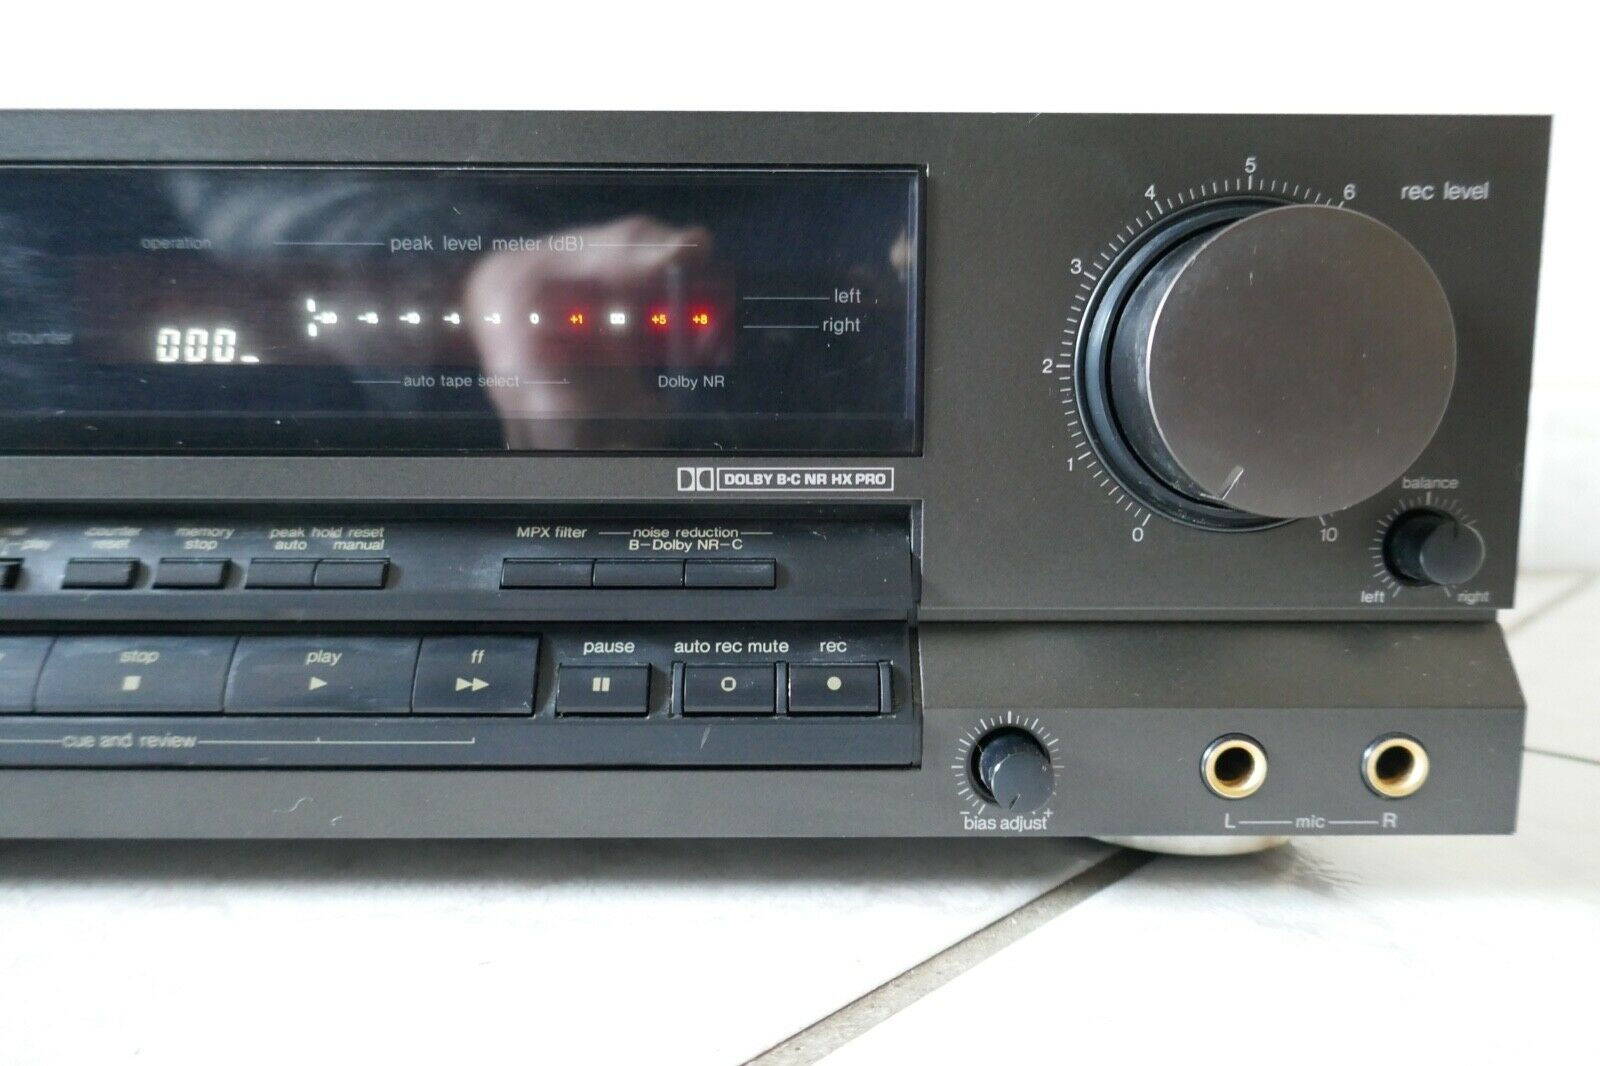 lecteur cassette tape deck technics RS-BX404 vintage occasion